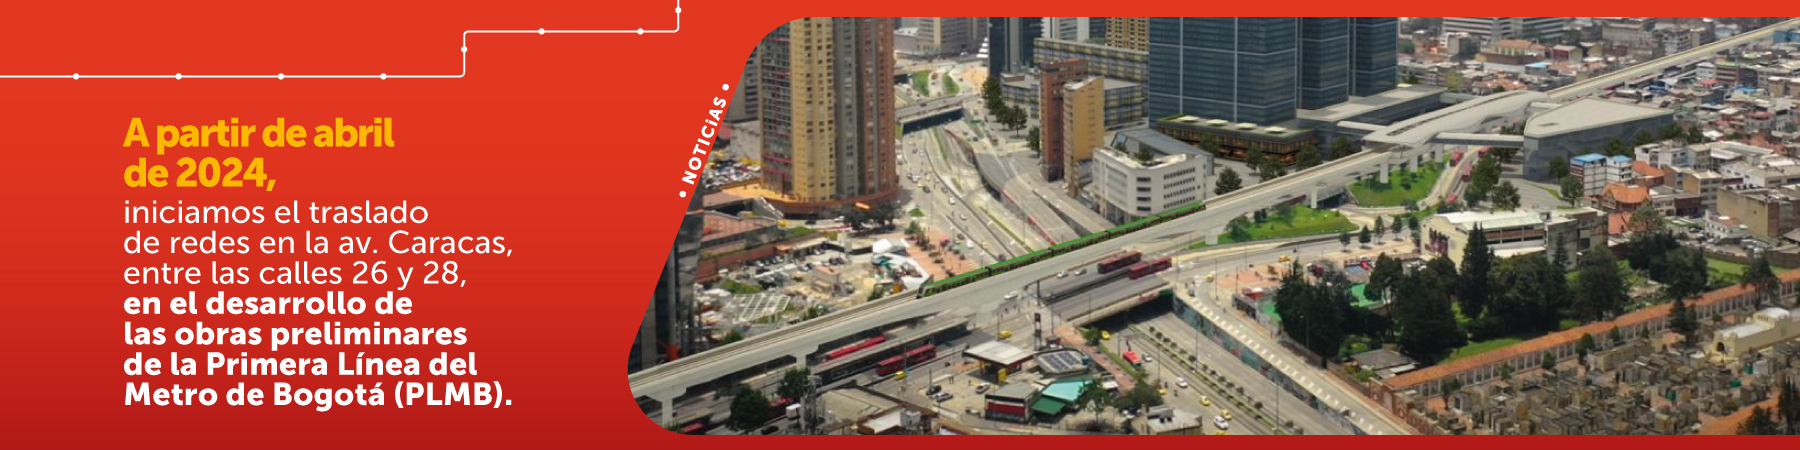 A partir de abril de 2024, iniciamos el traslado de redes en la av. Caracas, entre las calles 26 y 28, en el desarrollo de las obras preliminares de la Primera Línea del Metro de Bogotá (PLMB)